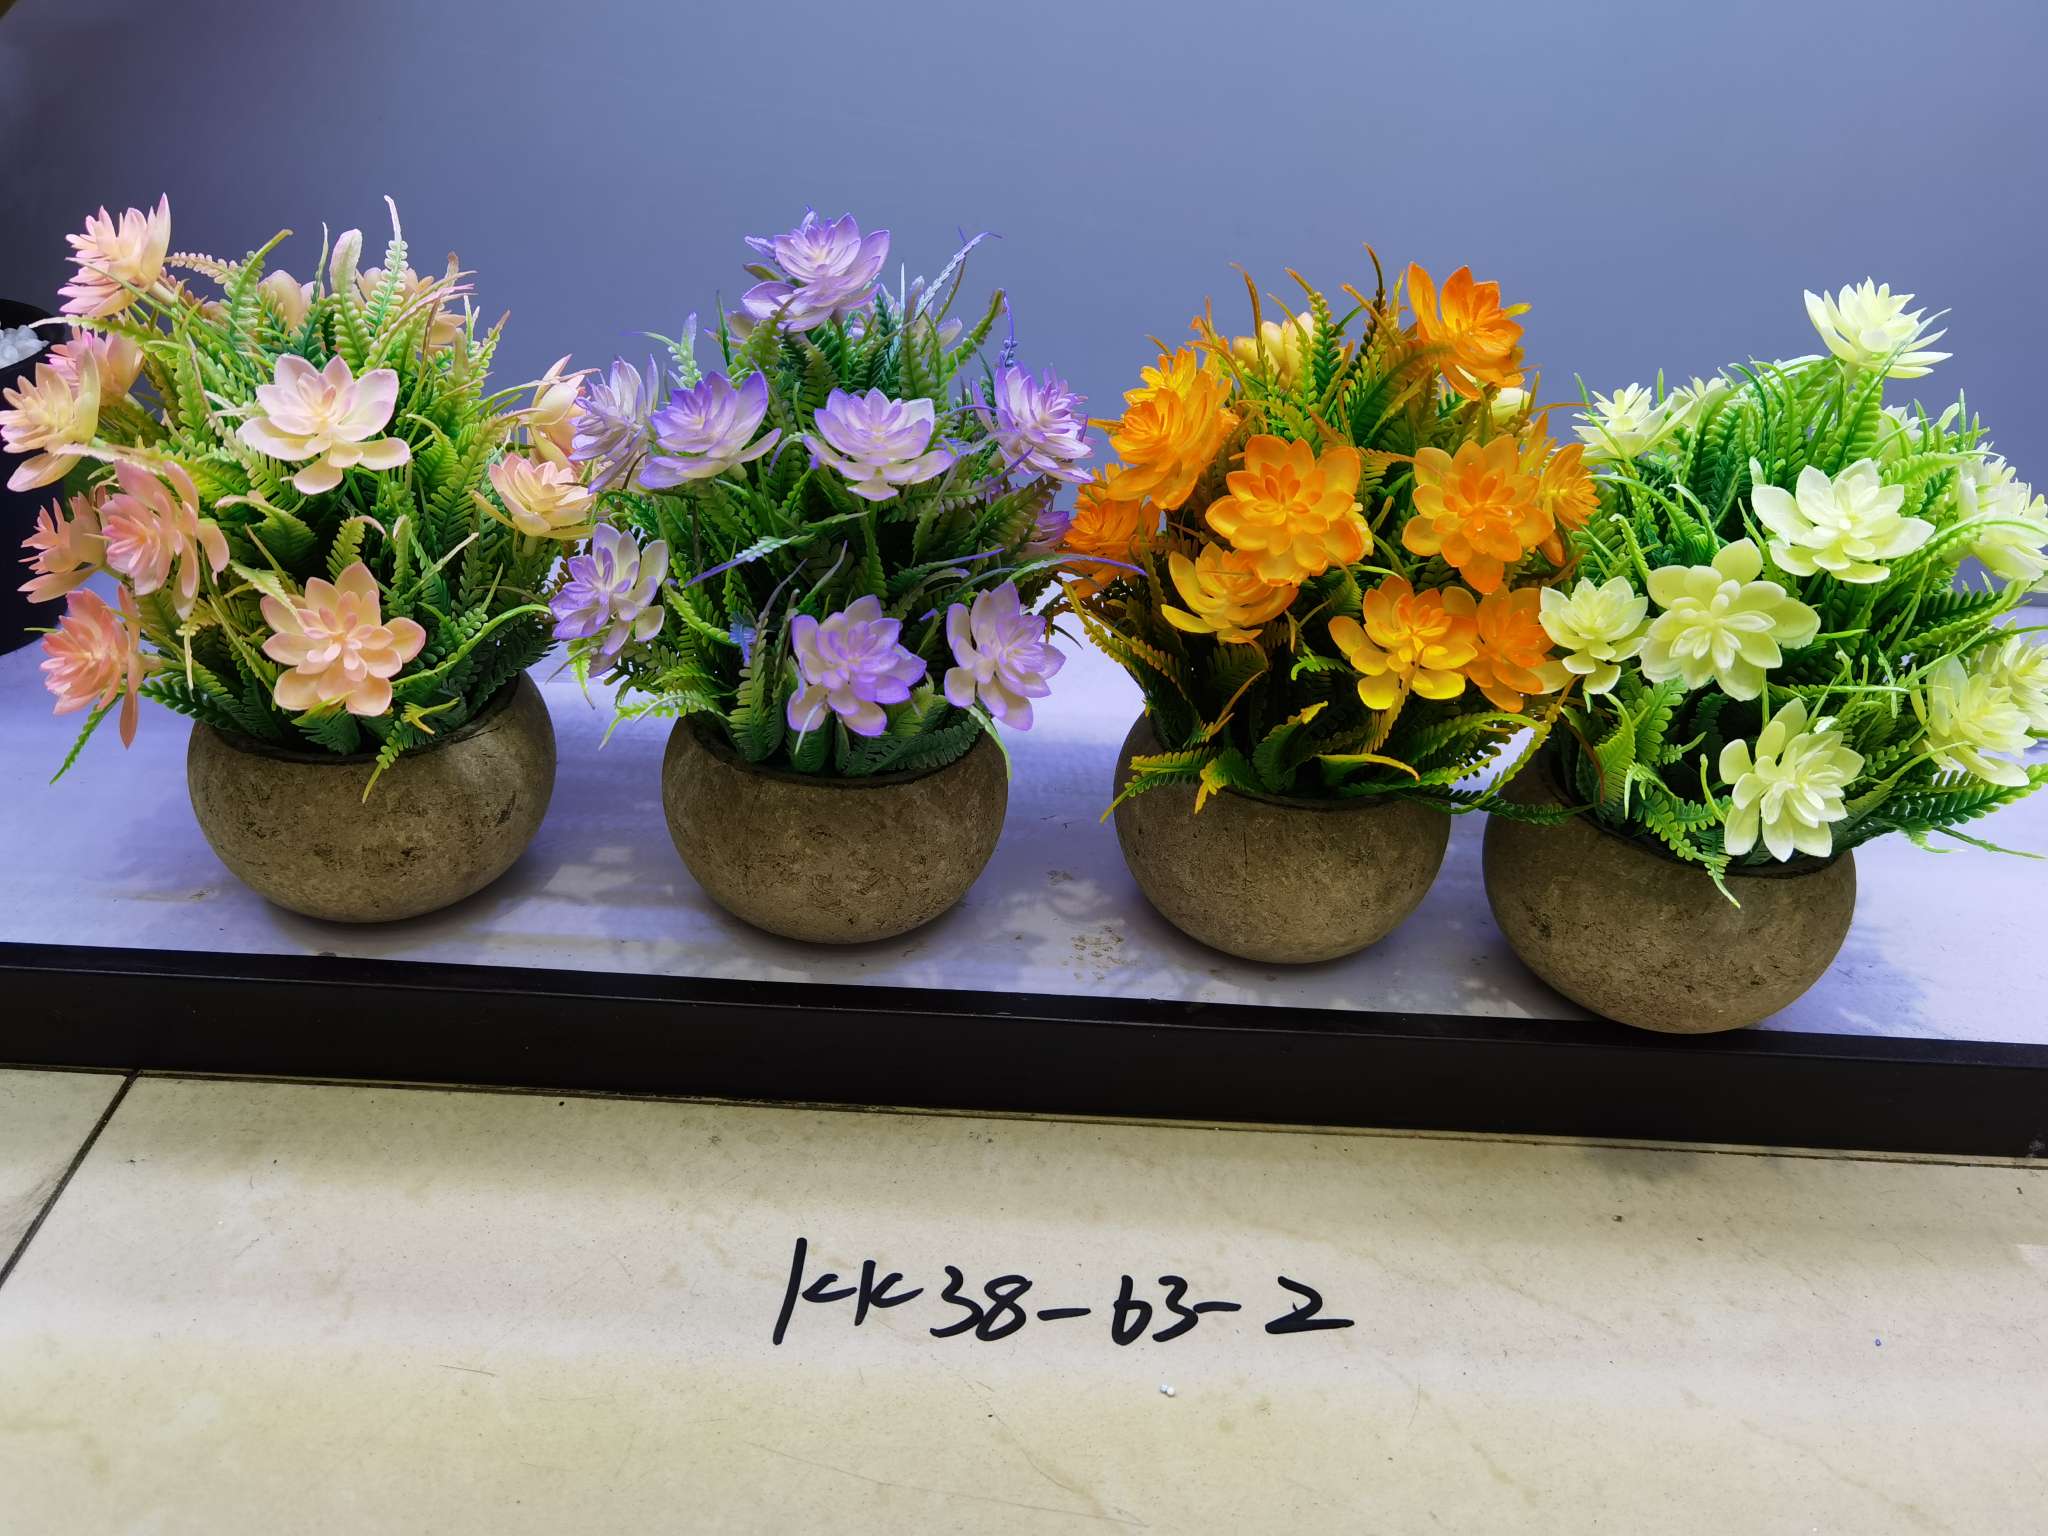 仿真植物小盆栽北欧客厅假花装饰盆景餐桌仿真花摆件绿植摆设图